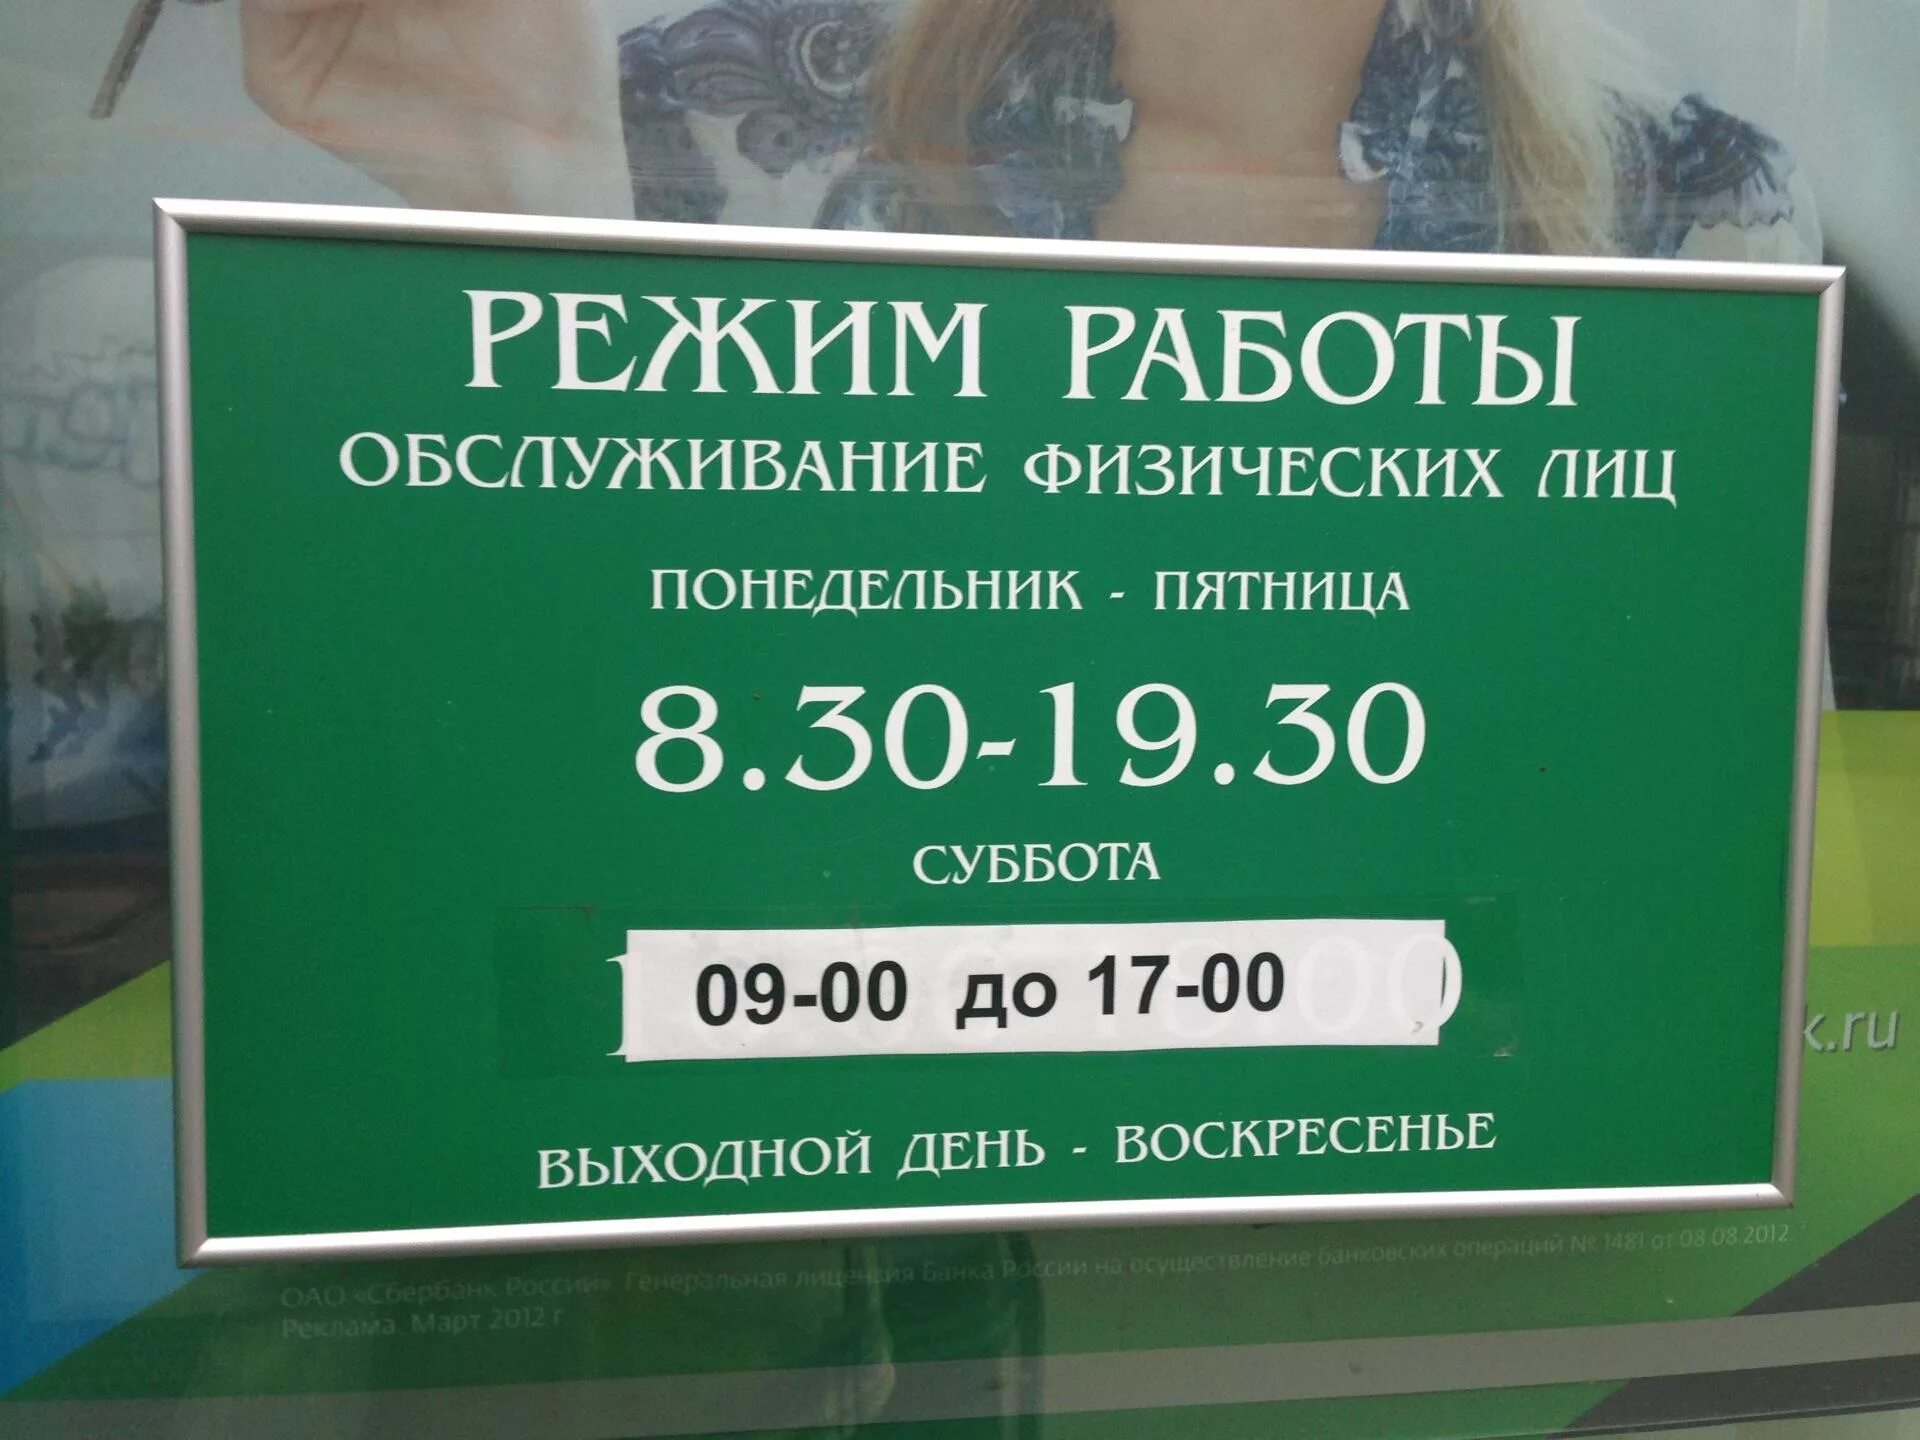 Работа сбербанка сегодня екатеринбург. Рабочие дни Сбербанка. График работы Сбербанка в Москве. Сбербанк работает в субботу. Суббота воскресенье Сбербанк работает.